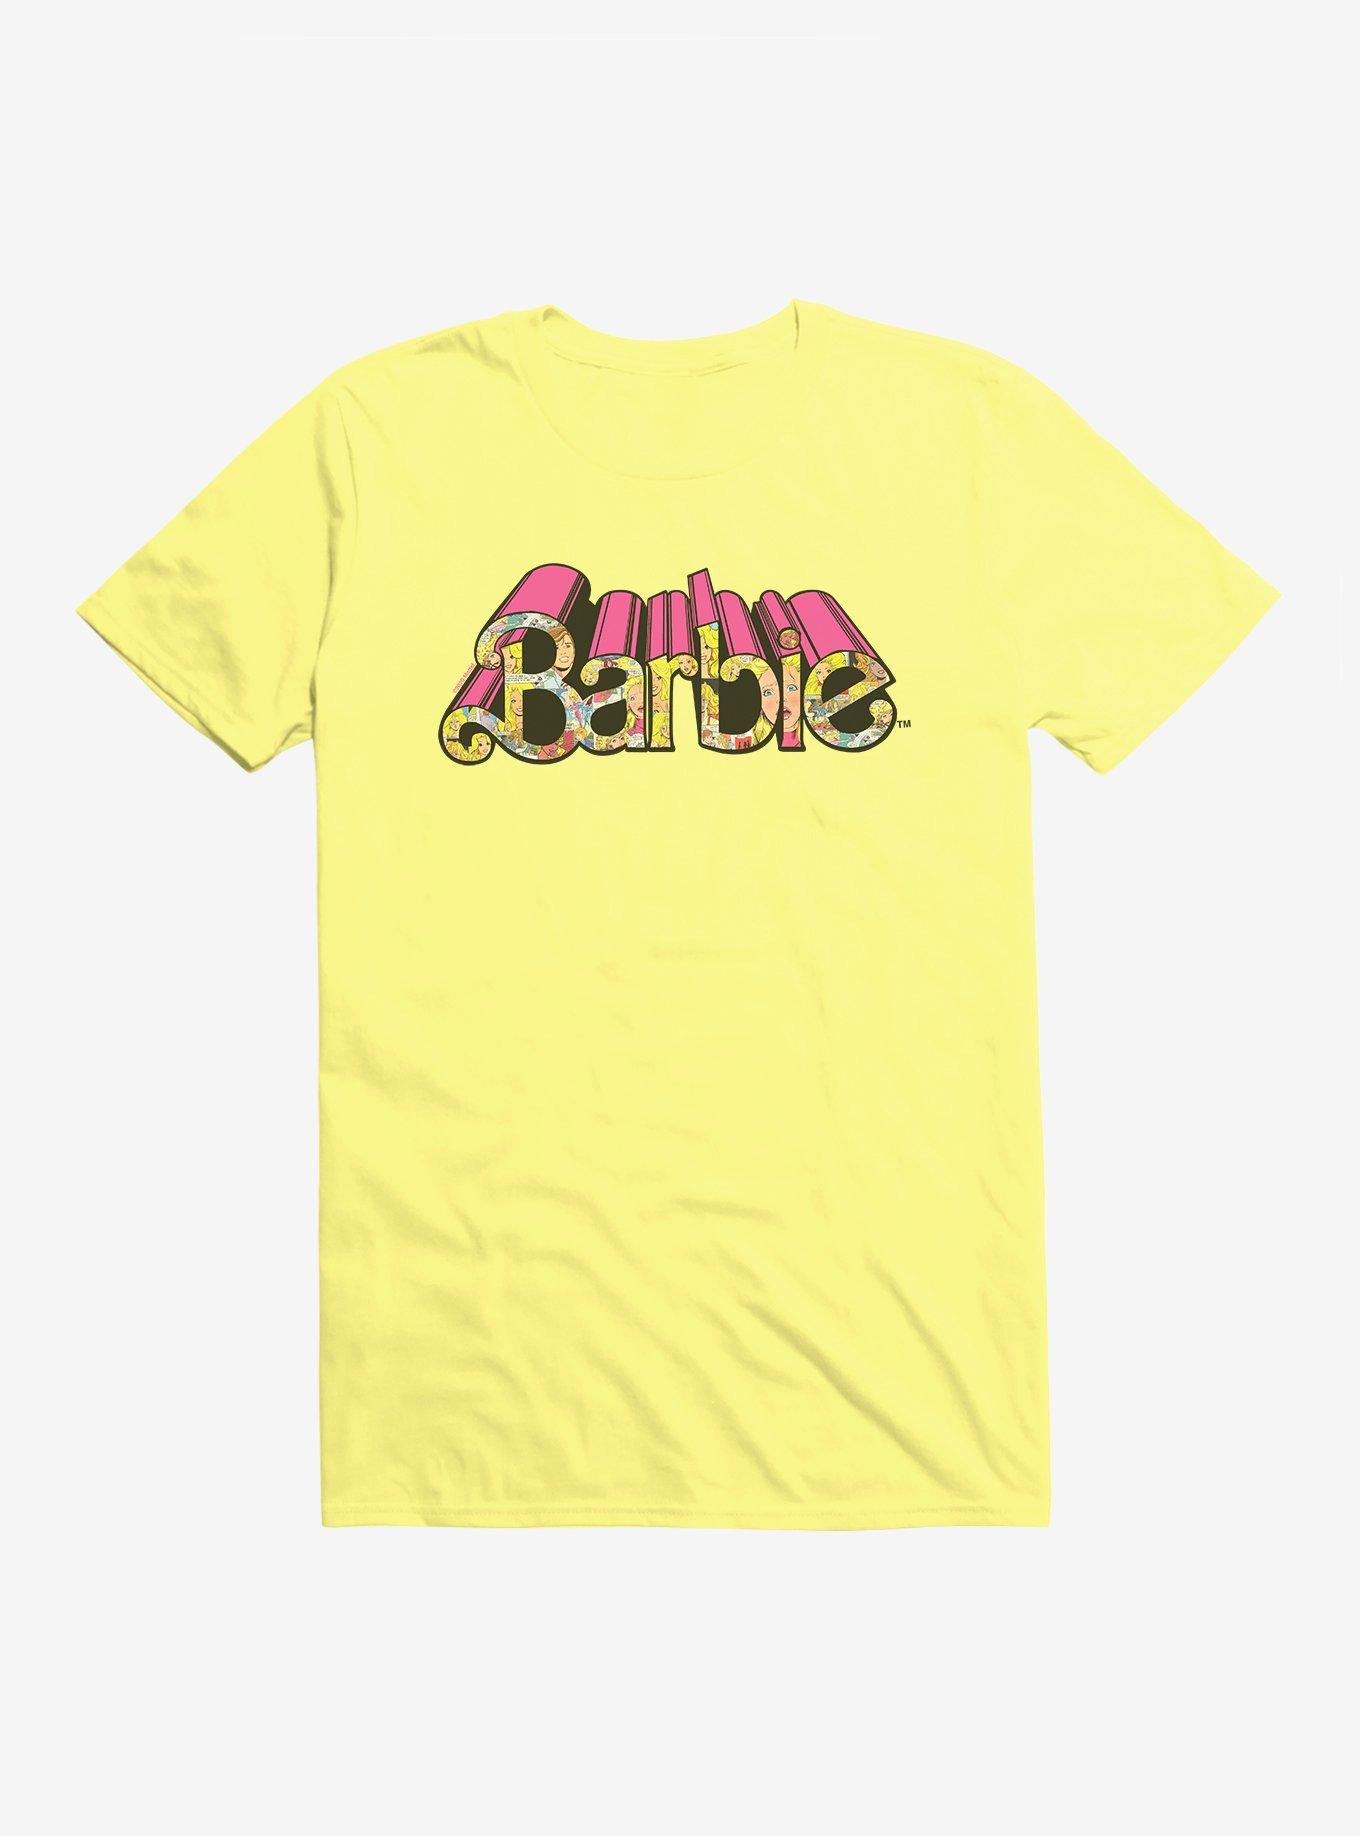 Barbie Bold Comic Script T-Shirt, , hi-res